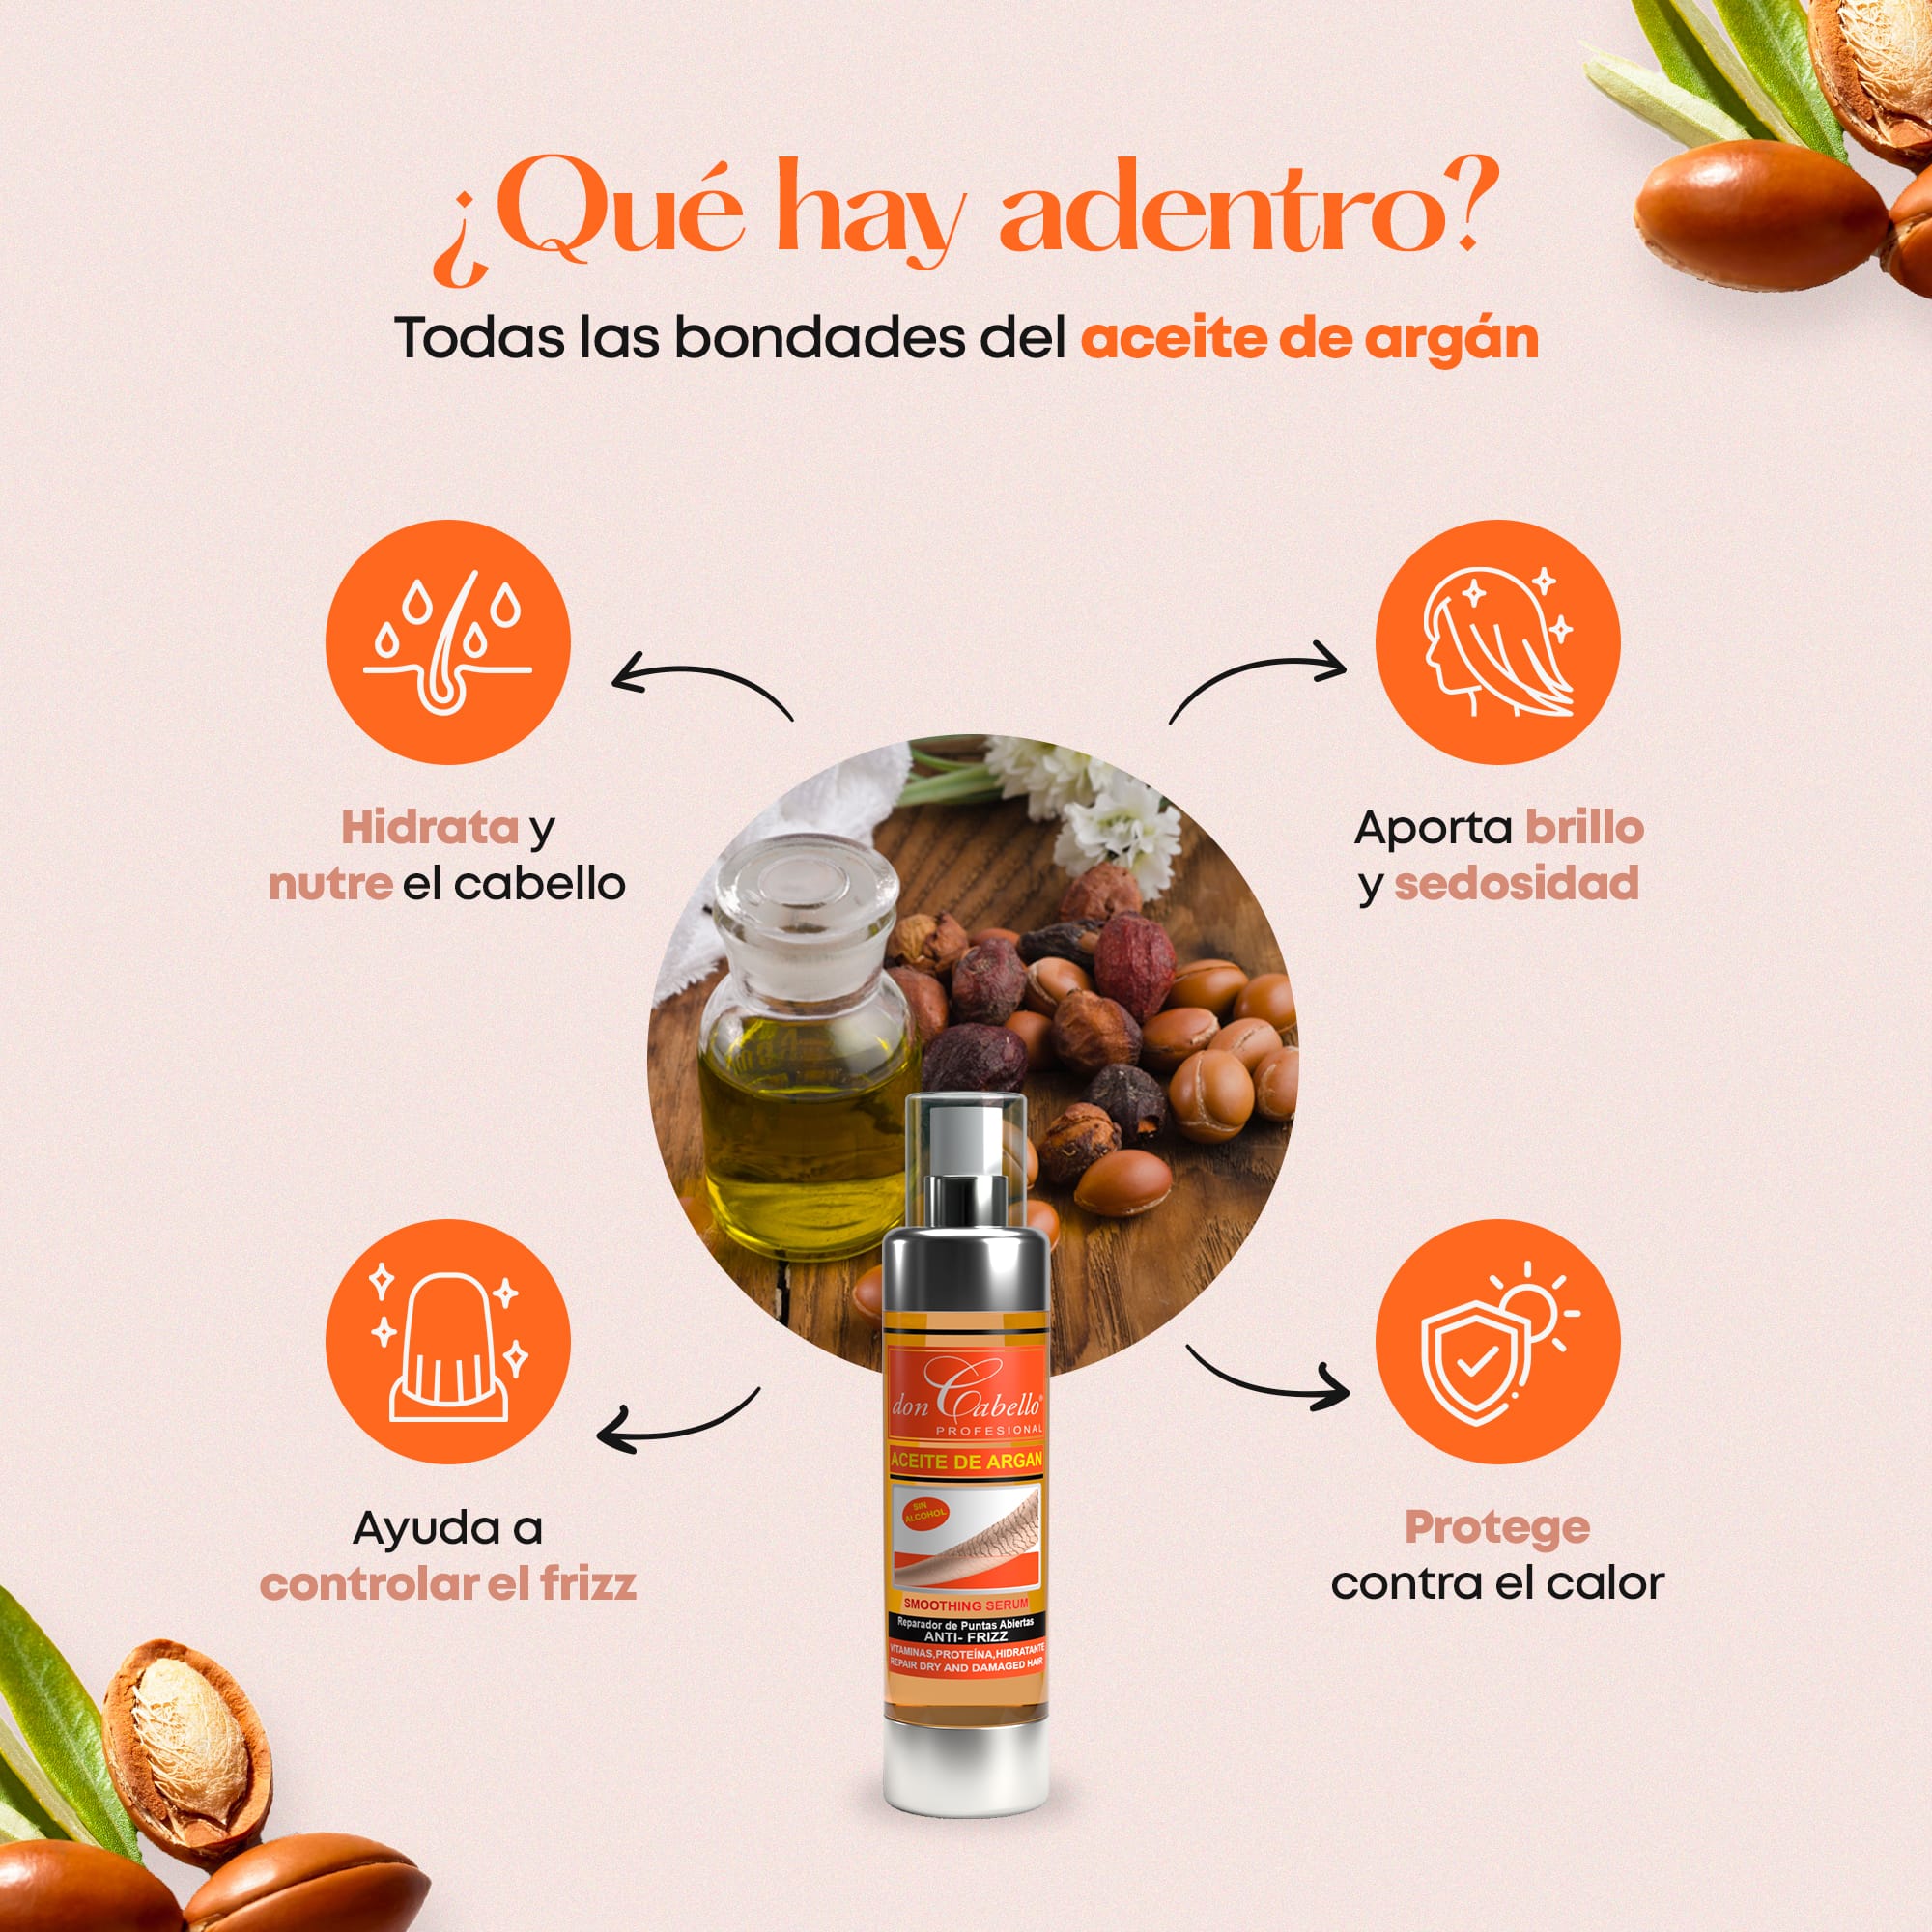 Don Cabello Aceite de Argán – Serum reparador de cabello 100 ml